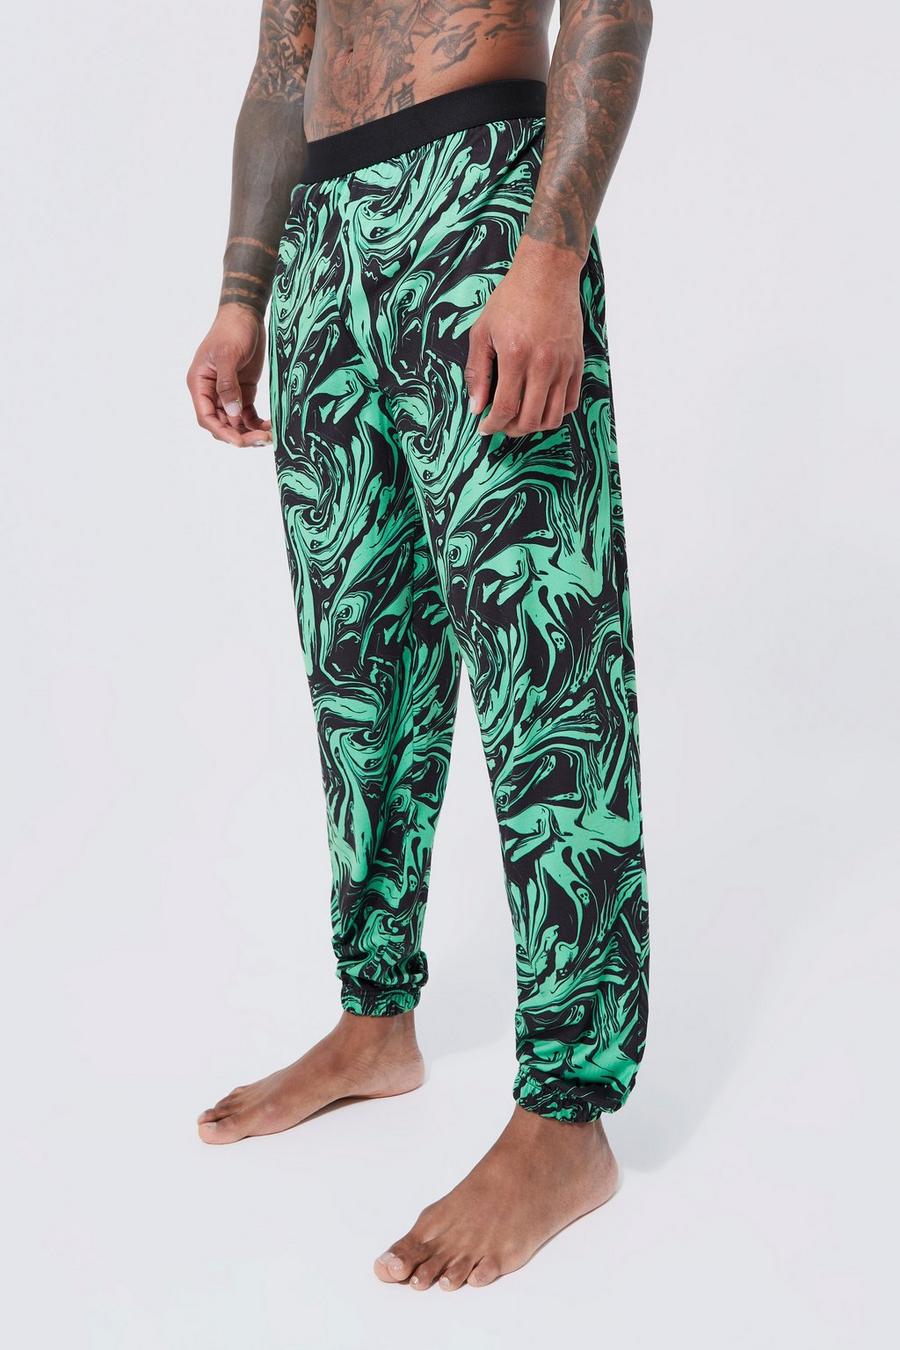 Pantaloni tuta di Loungewear da casa con stampa marmorizzata, Green verde